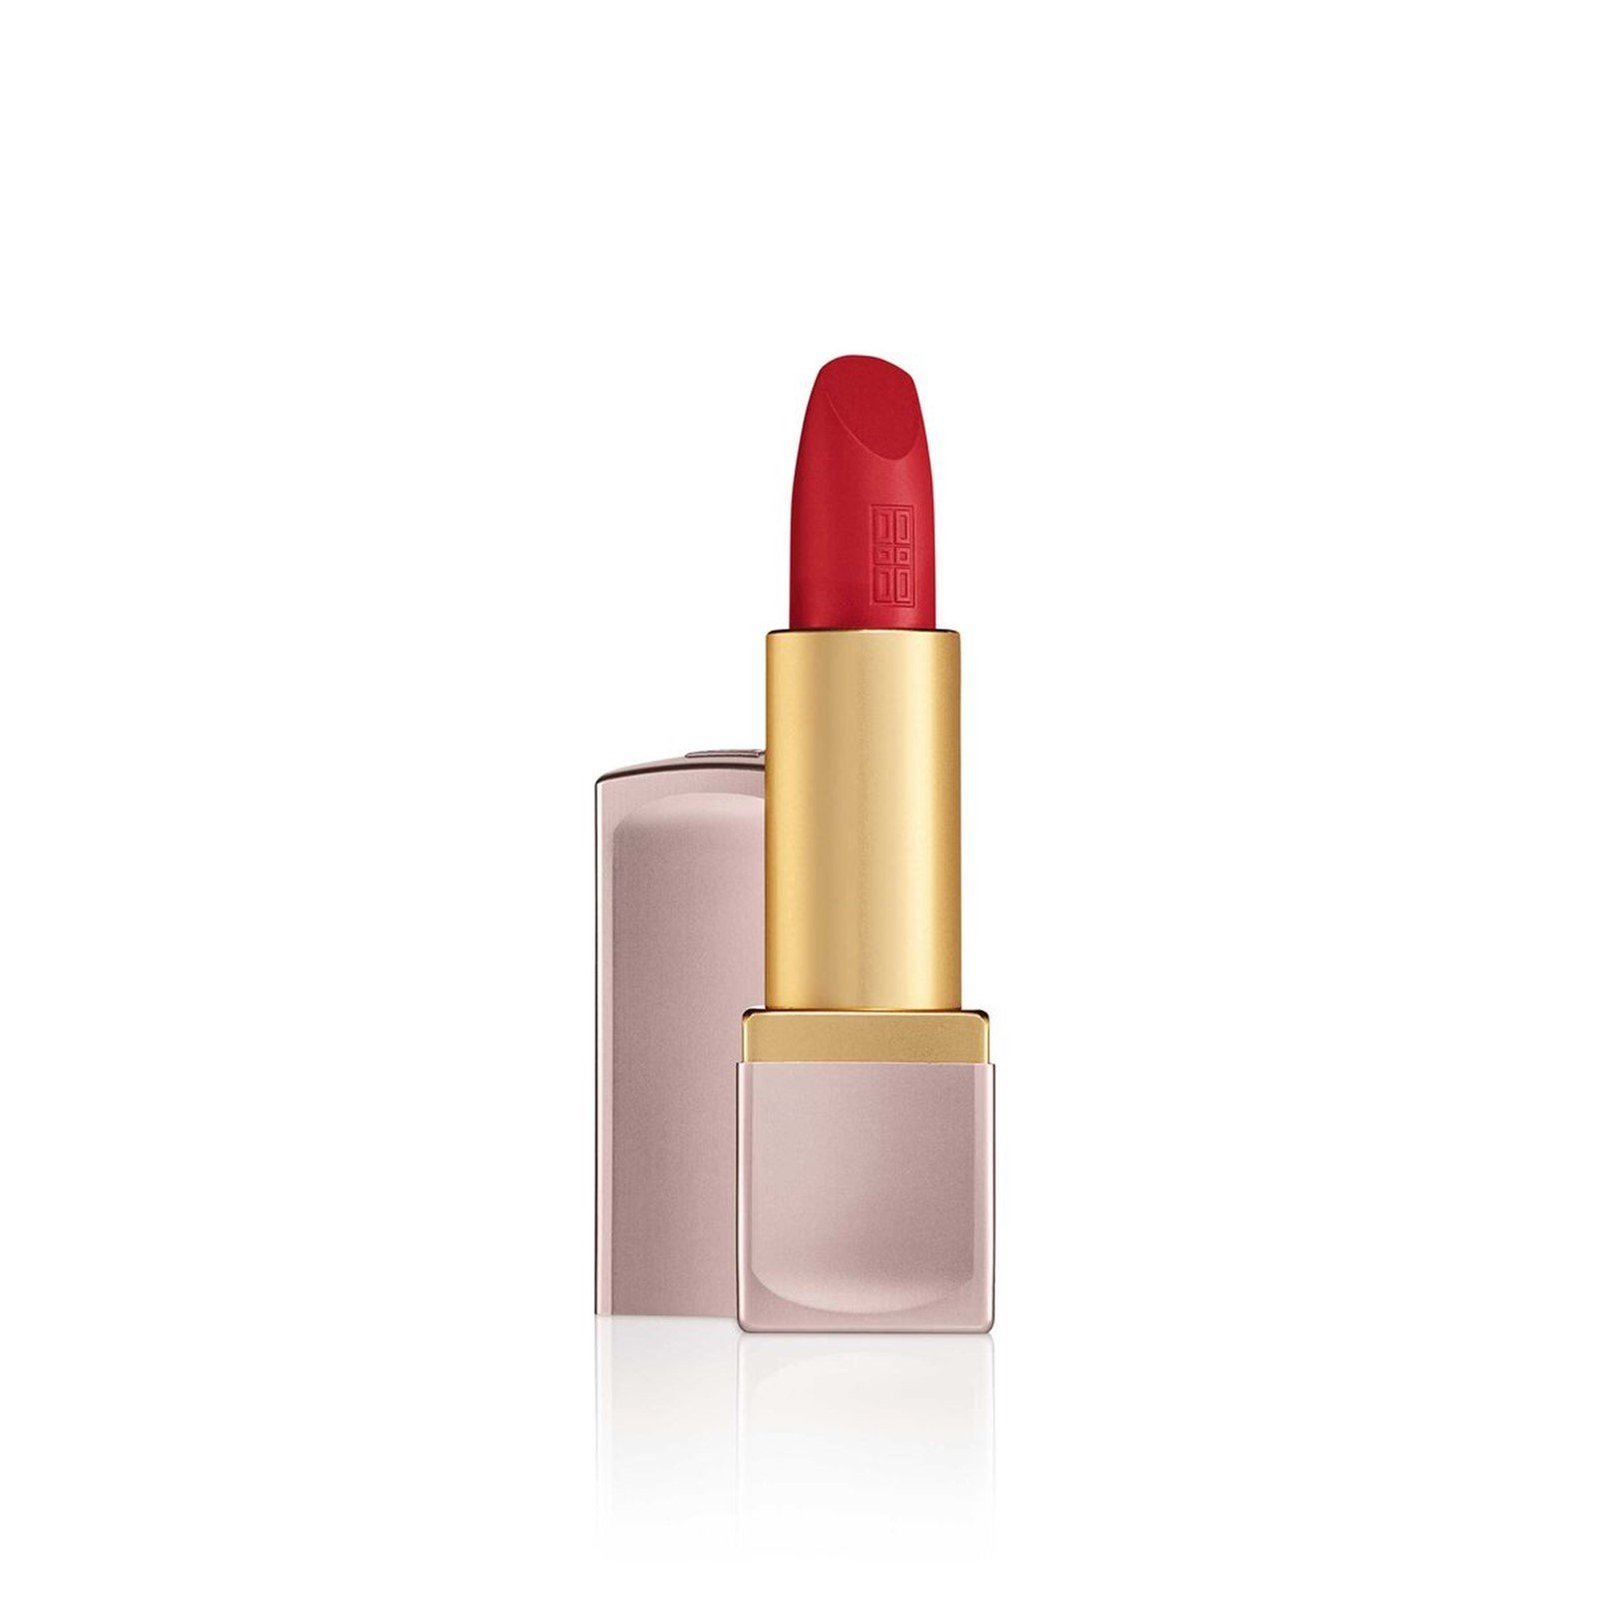 Elizabeth Arden Lip Color Lipstick 08 Statement Red Matte 4g